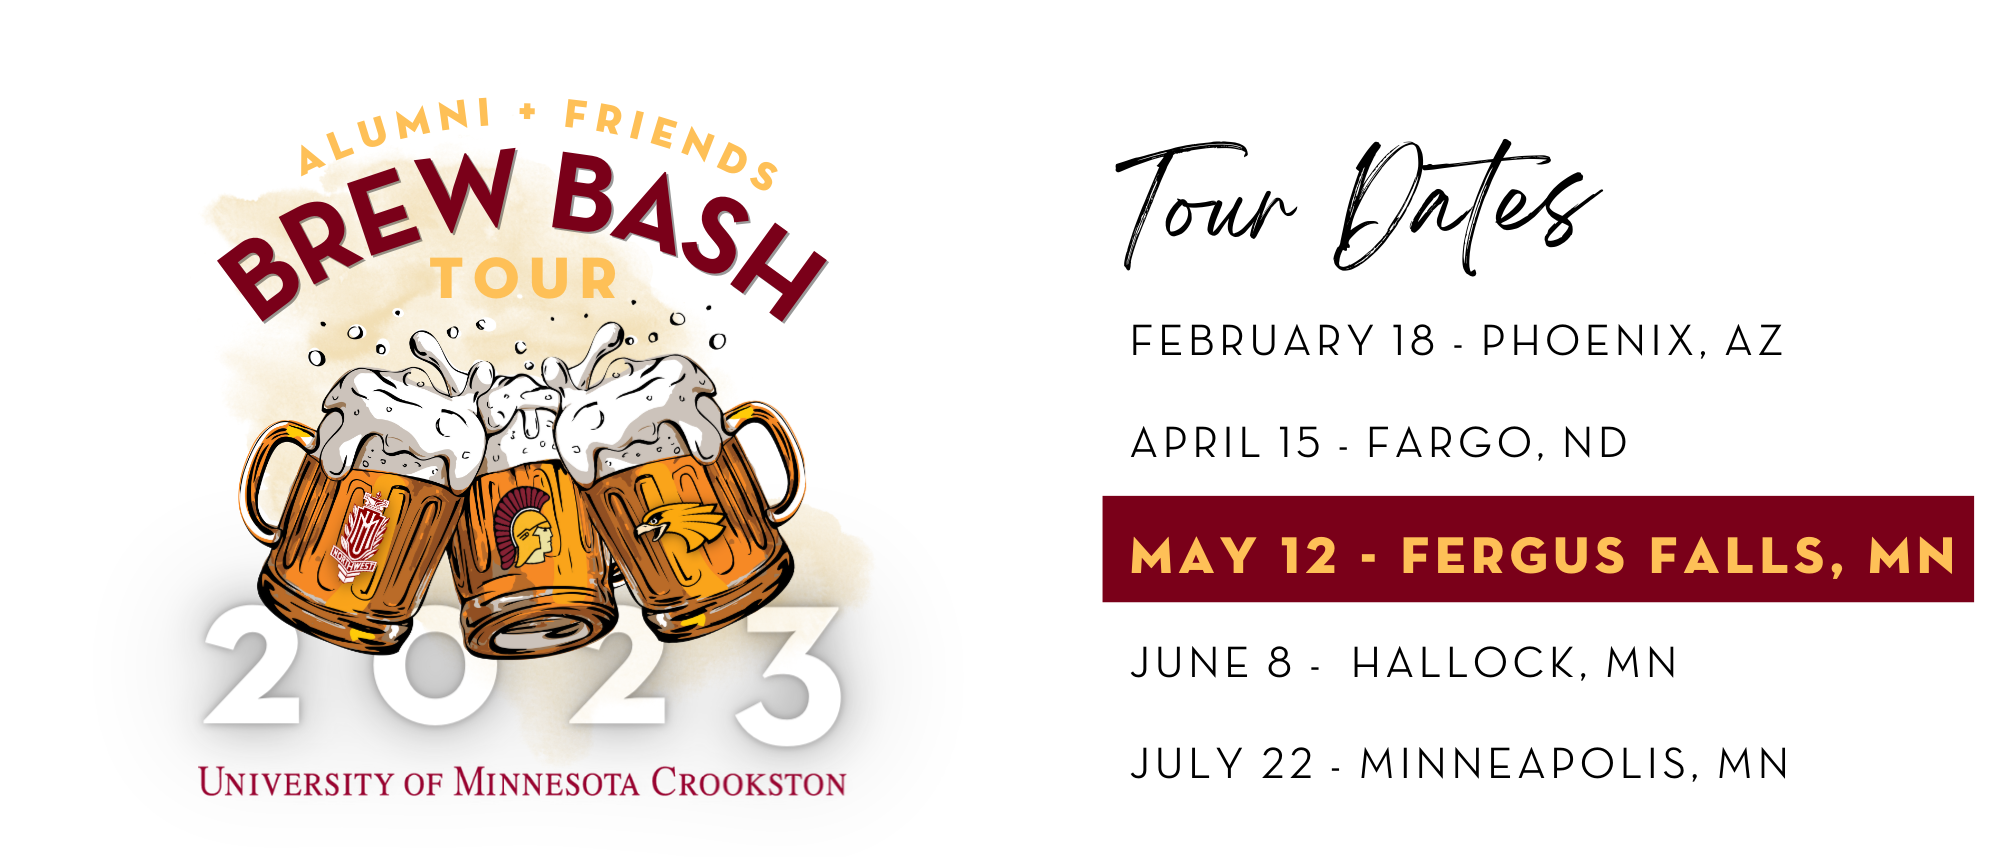 Alumni and Friends Brew Bash Tour Dates